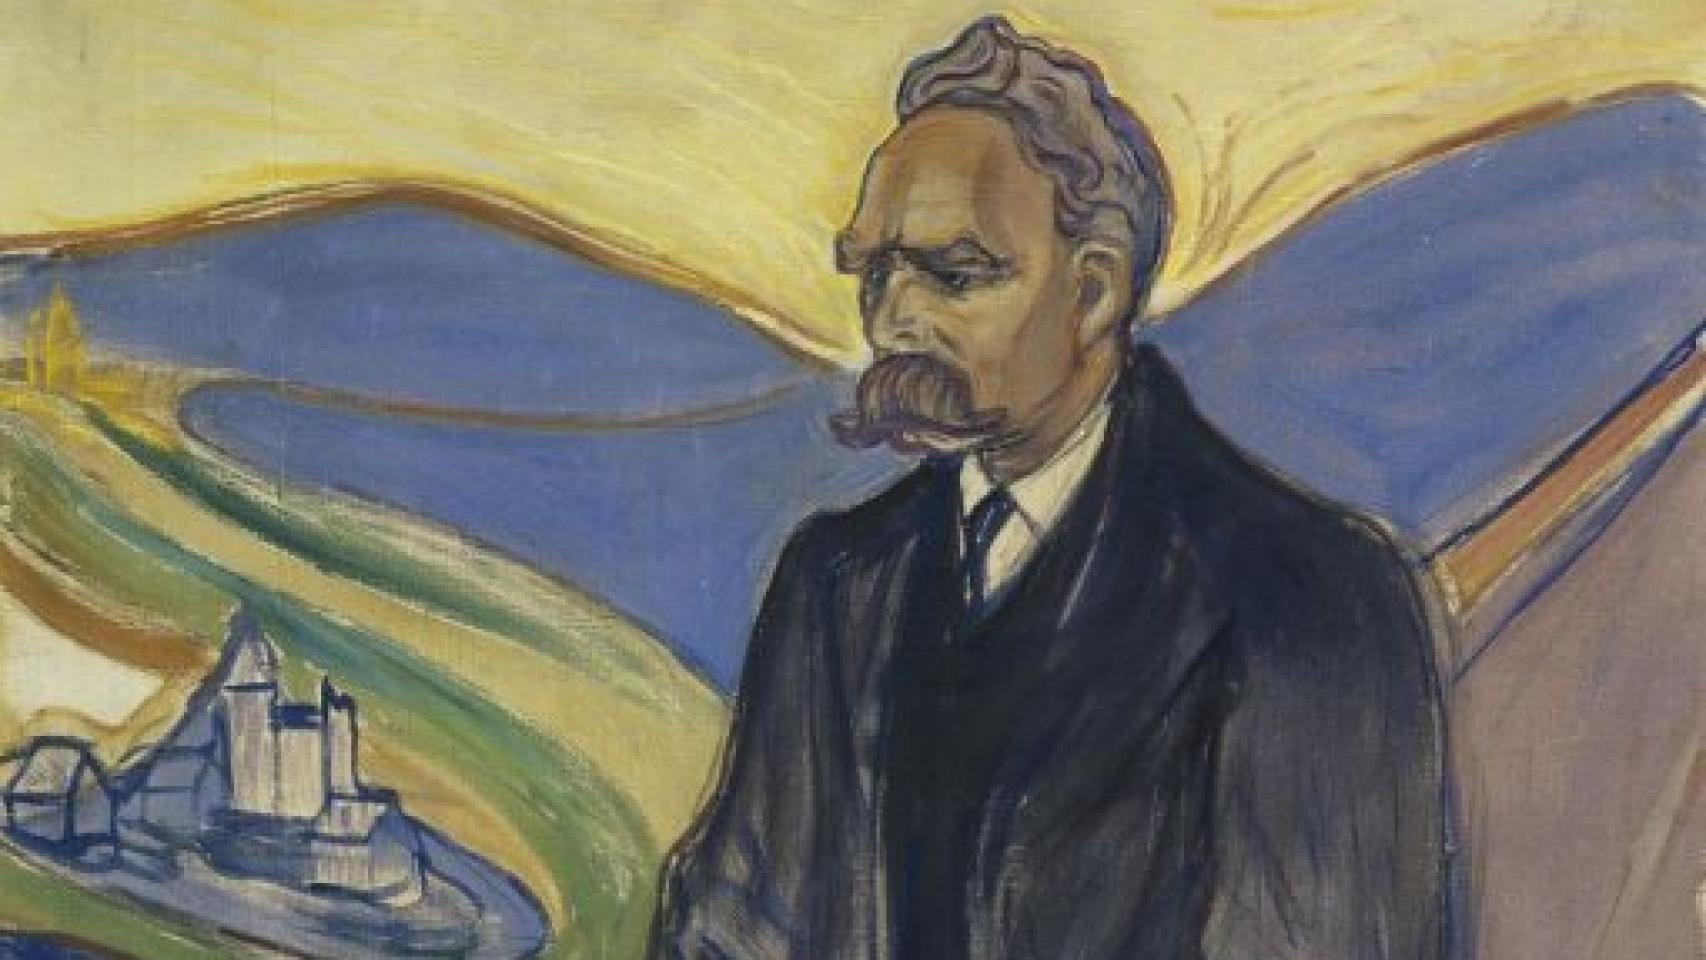 Image: El itinerario intelectual de Nietzsche